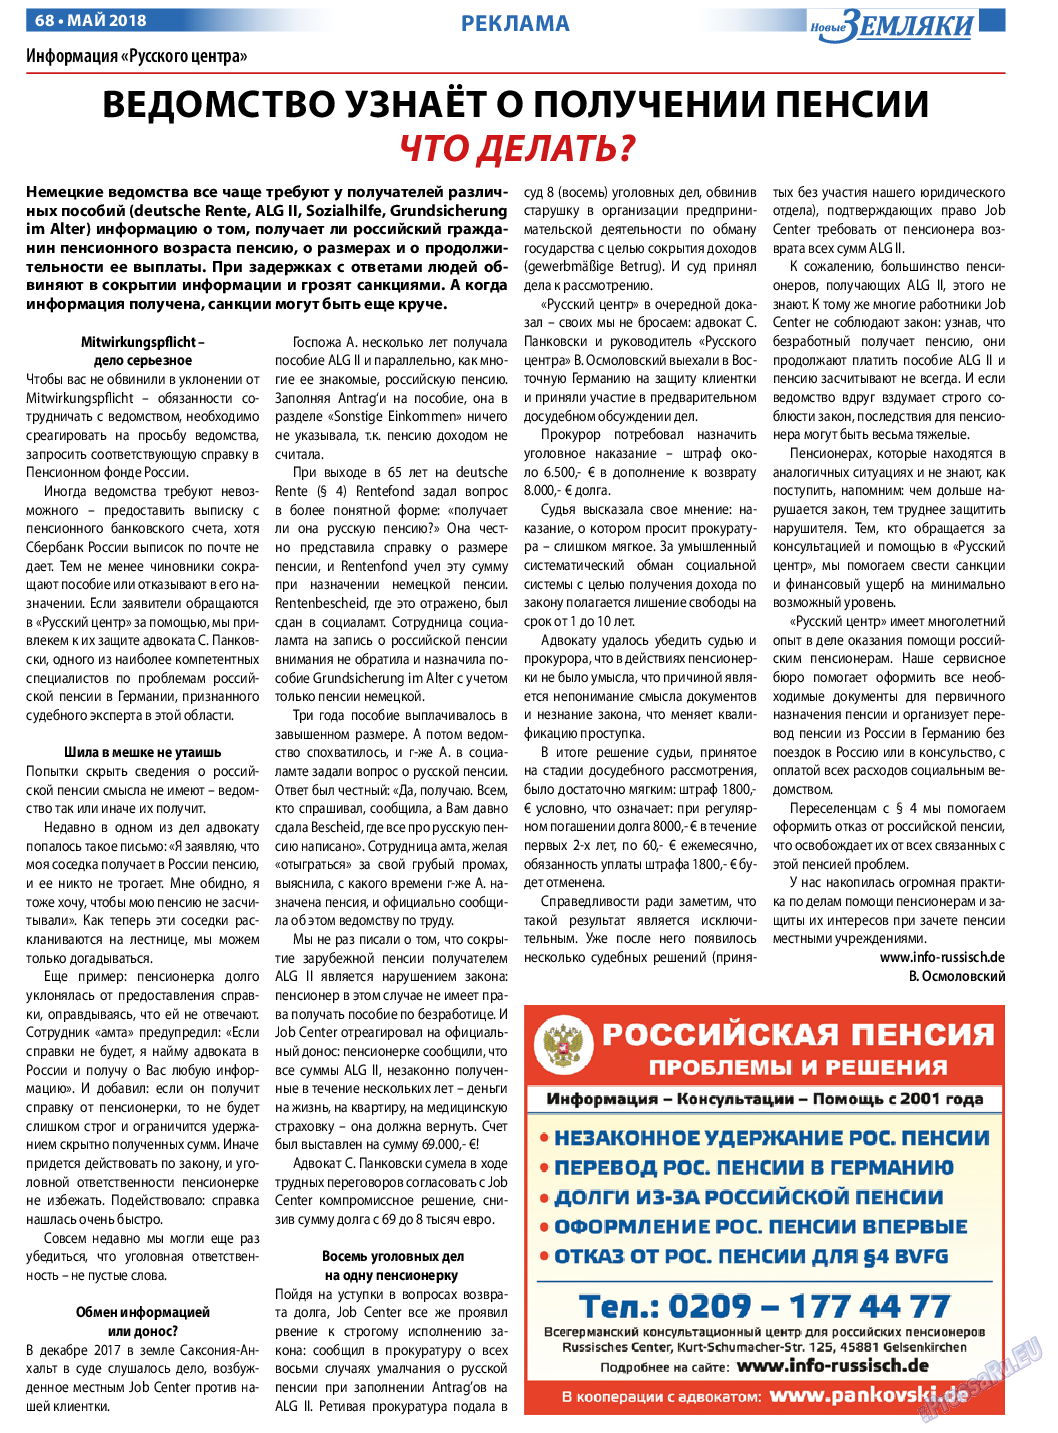 Новые Земляки, газета. 2018 №5 стр.68